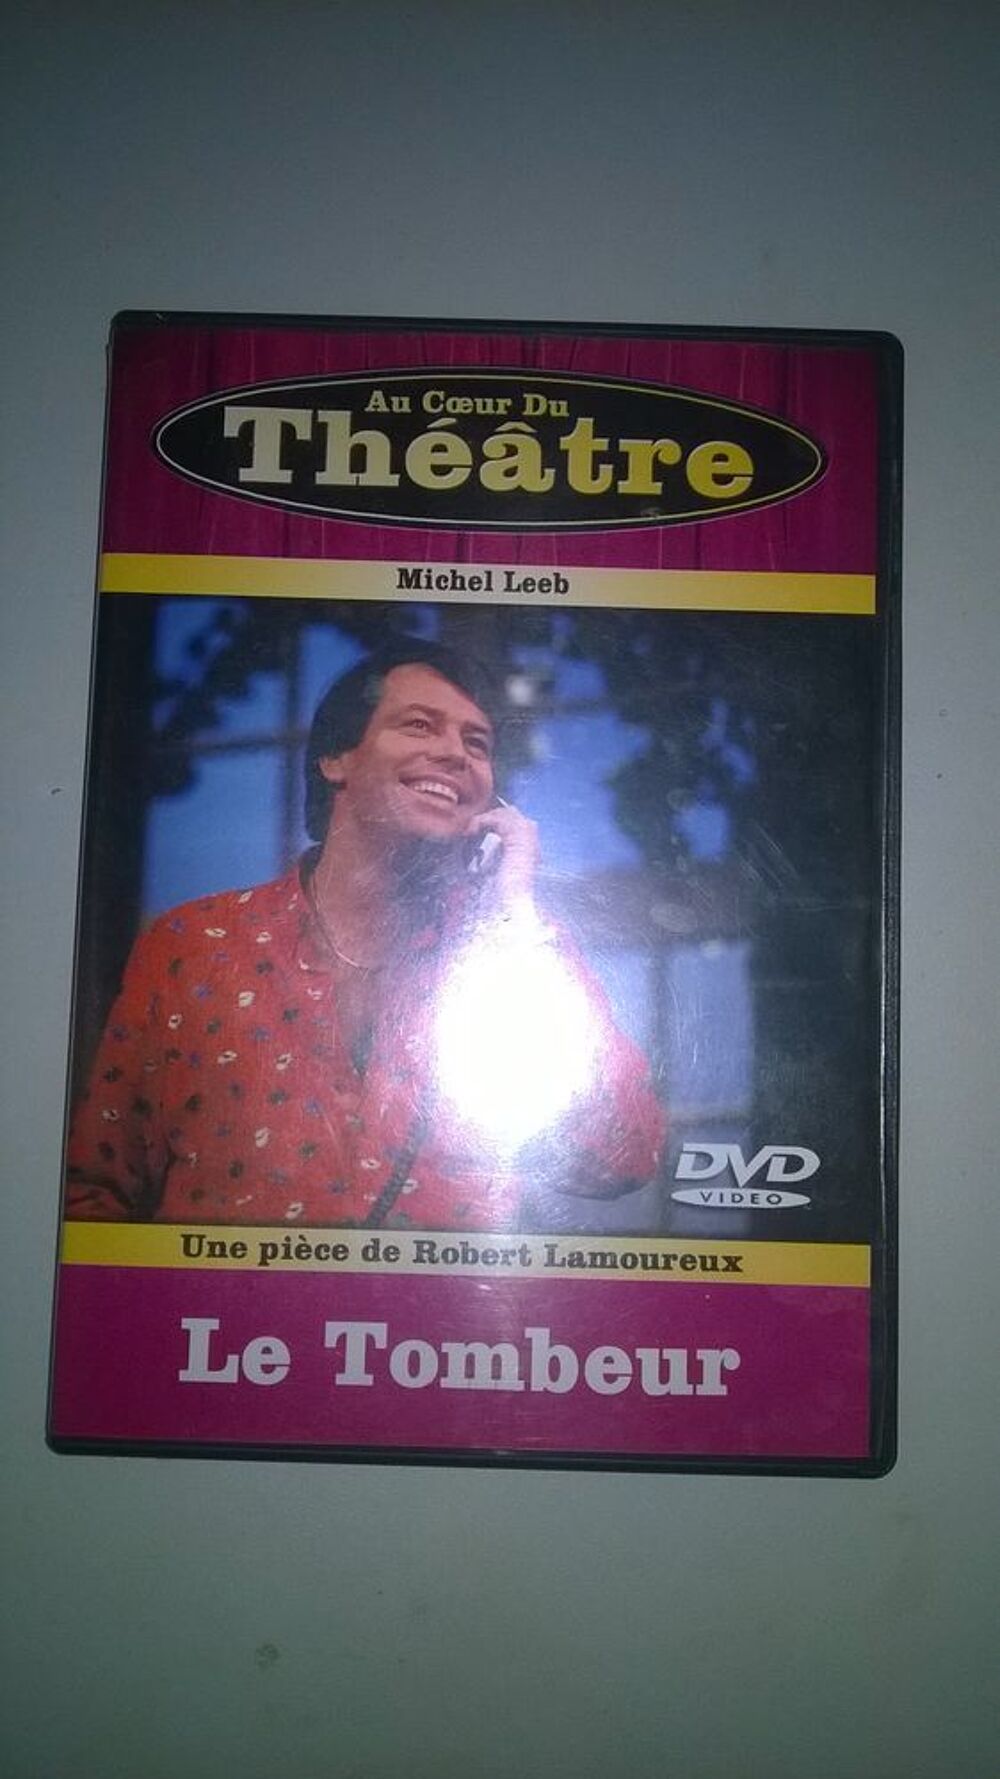 DVD Au Coeur Du Theatre Le Tombeur
Michel Leeb
1987
DVD et blu-ray